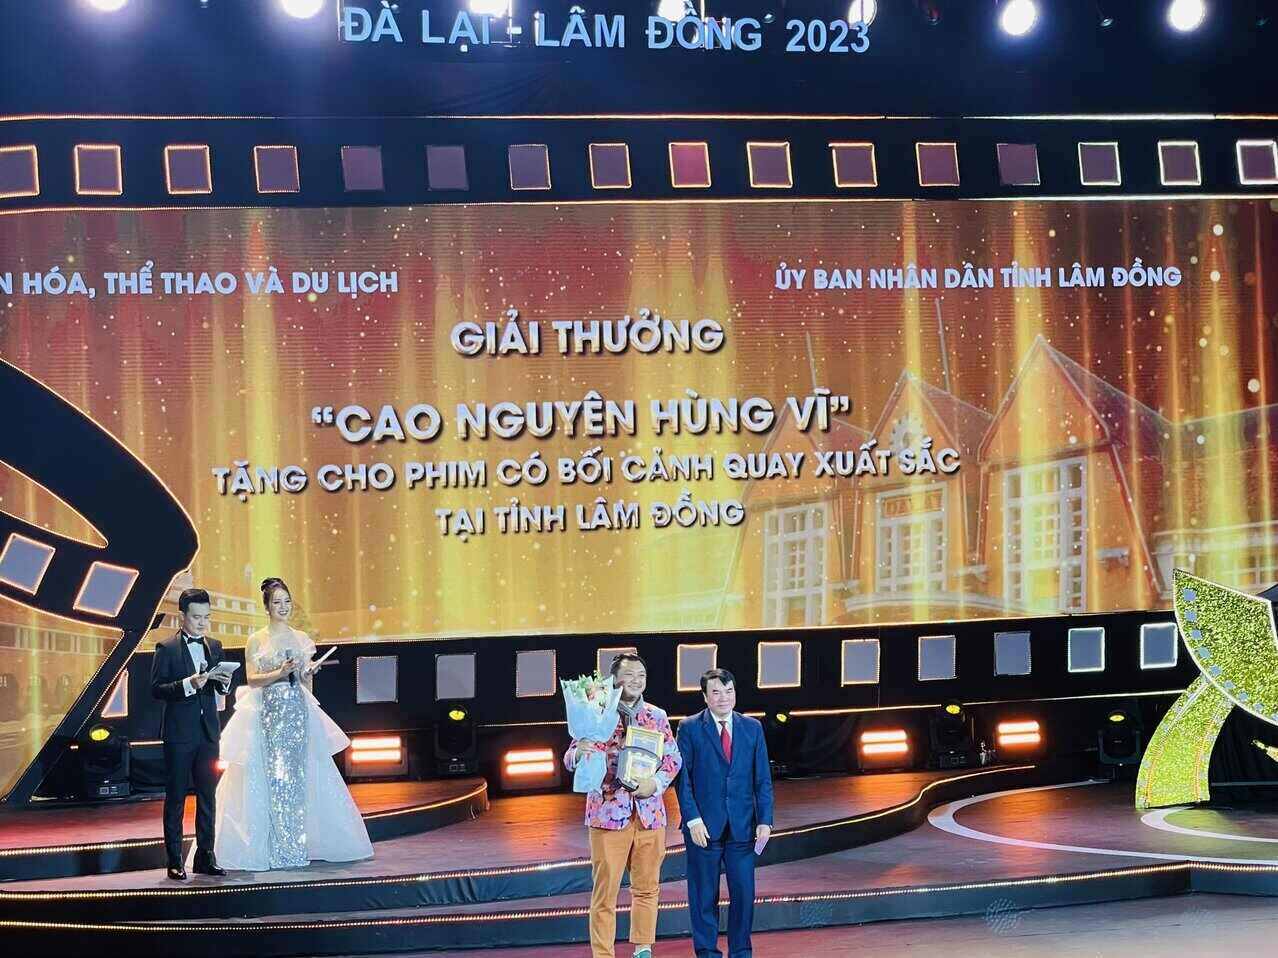 Ông Phạm S - Phó Chủ tịch UBND tỉnh Lâm Đồng đã trao tặng giải thưởng “Lâm Đồng – Cao nguyên hùng vĩ“. Ảnh: Mai Hương